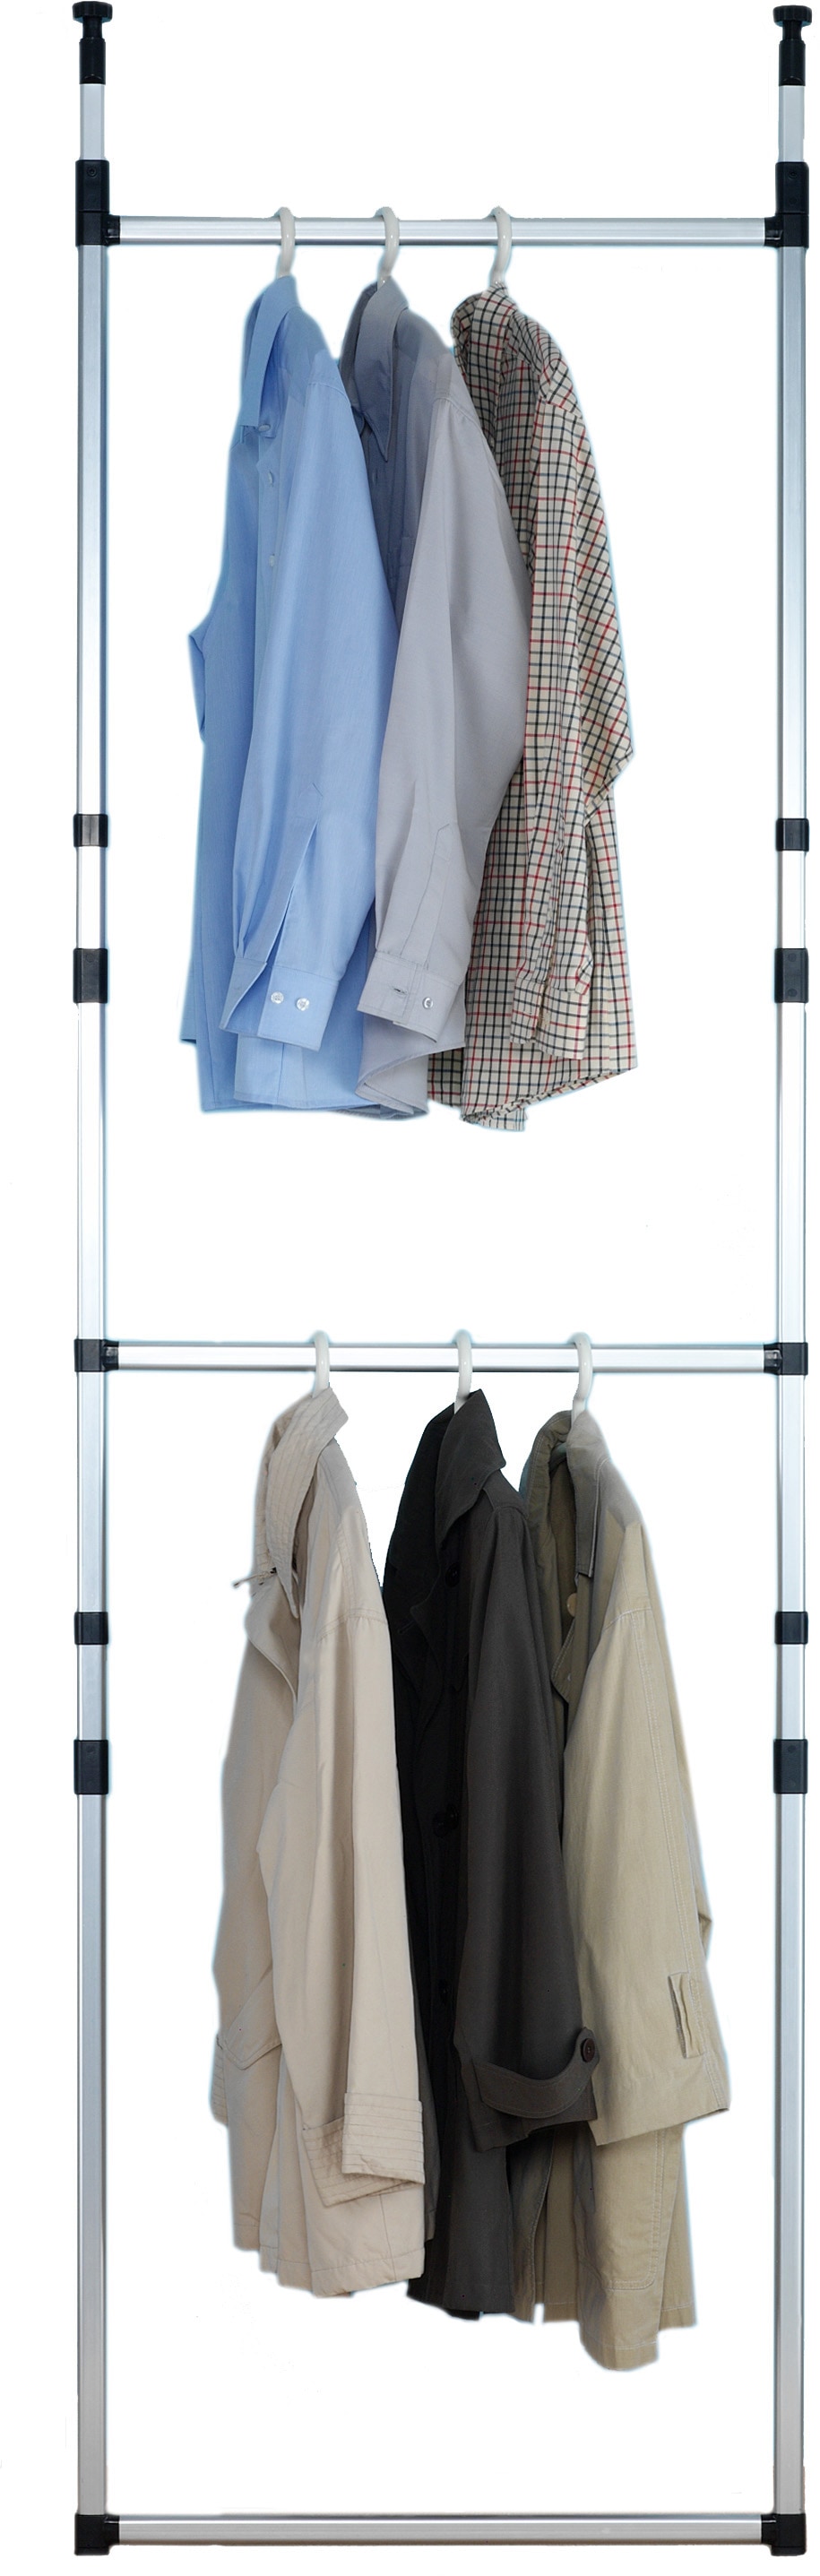 Ruco Teleskopregal, Aluminium/Kunststoff, ideal begehbare kaufen für Kleiderschränke online